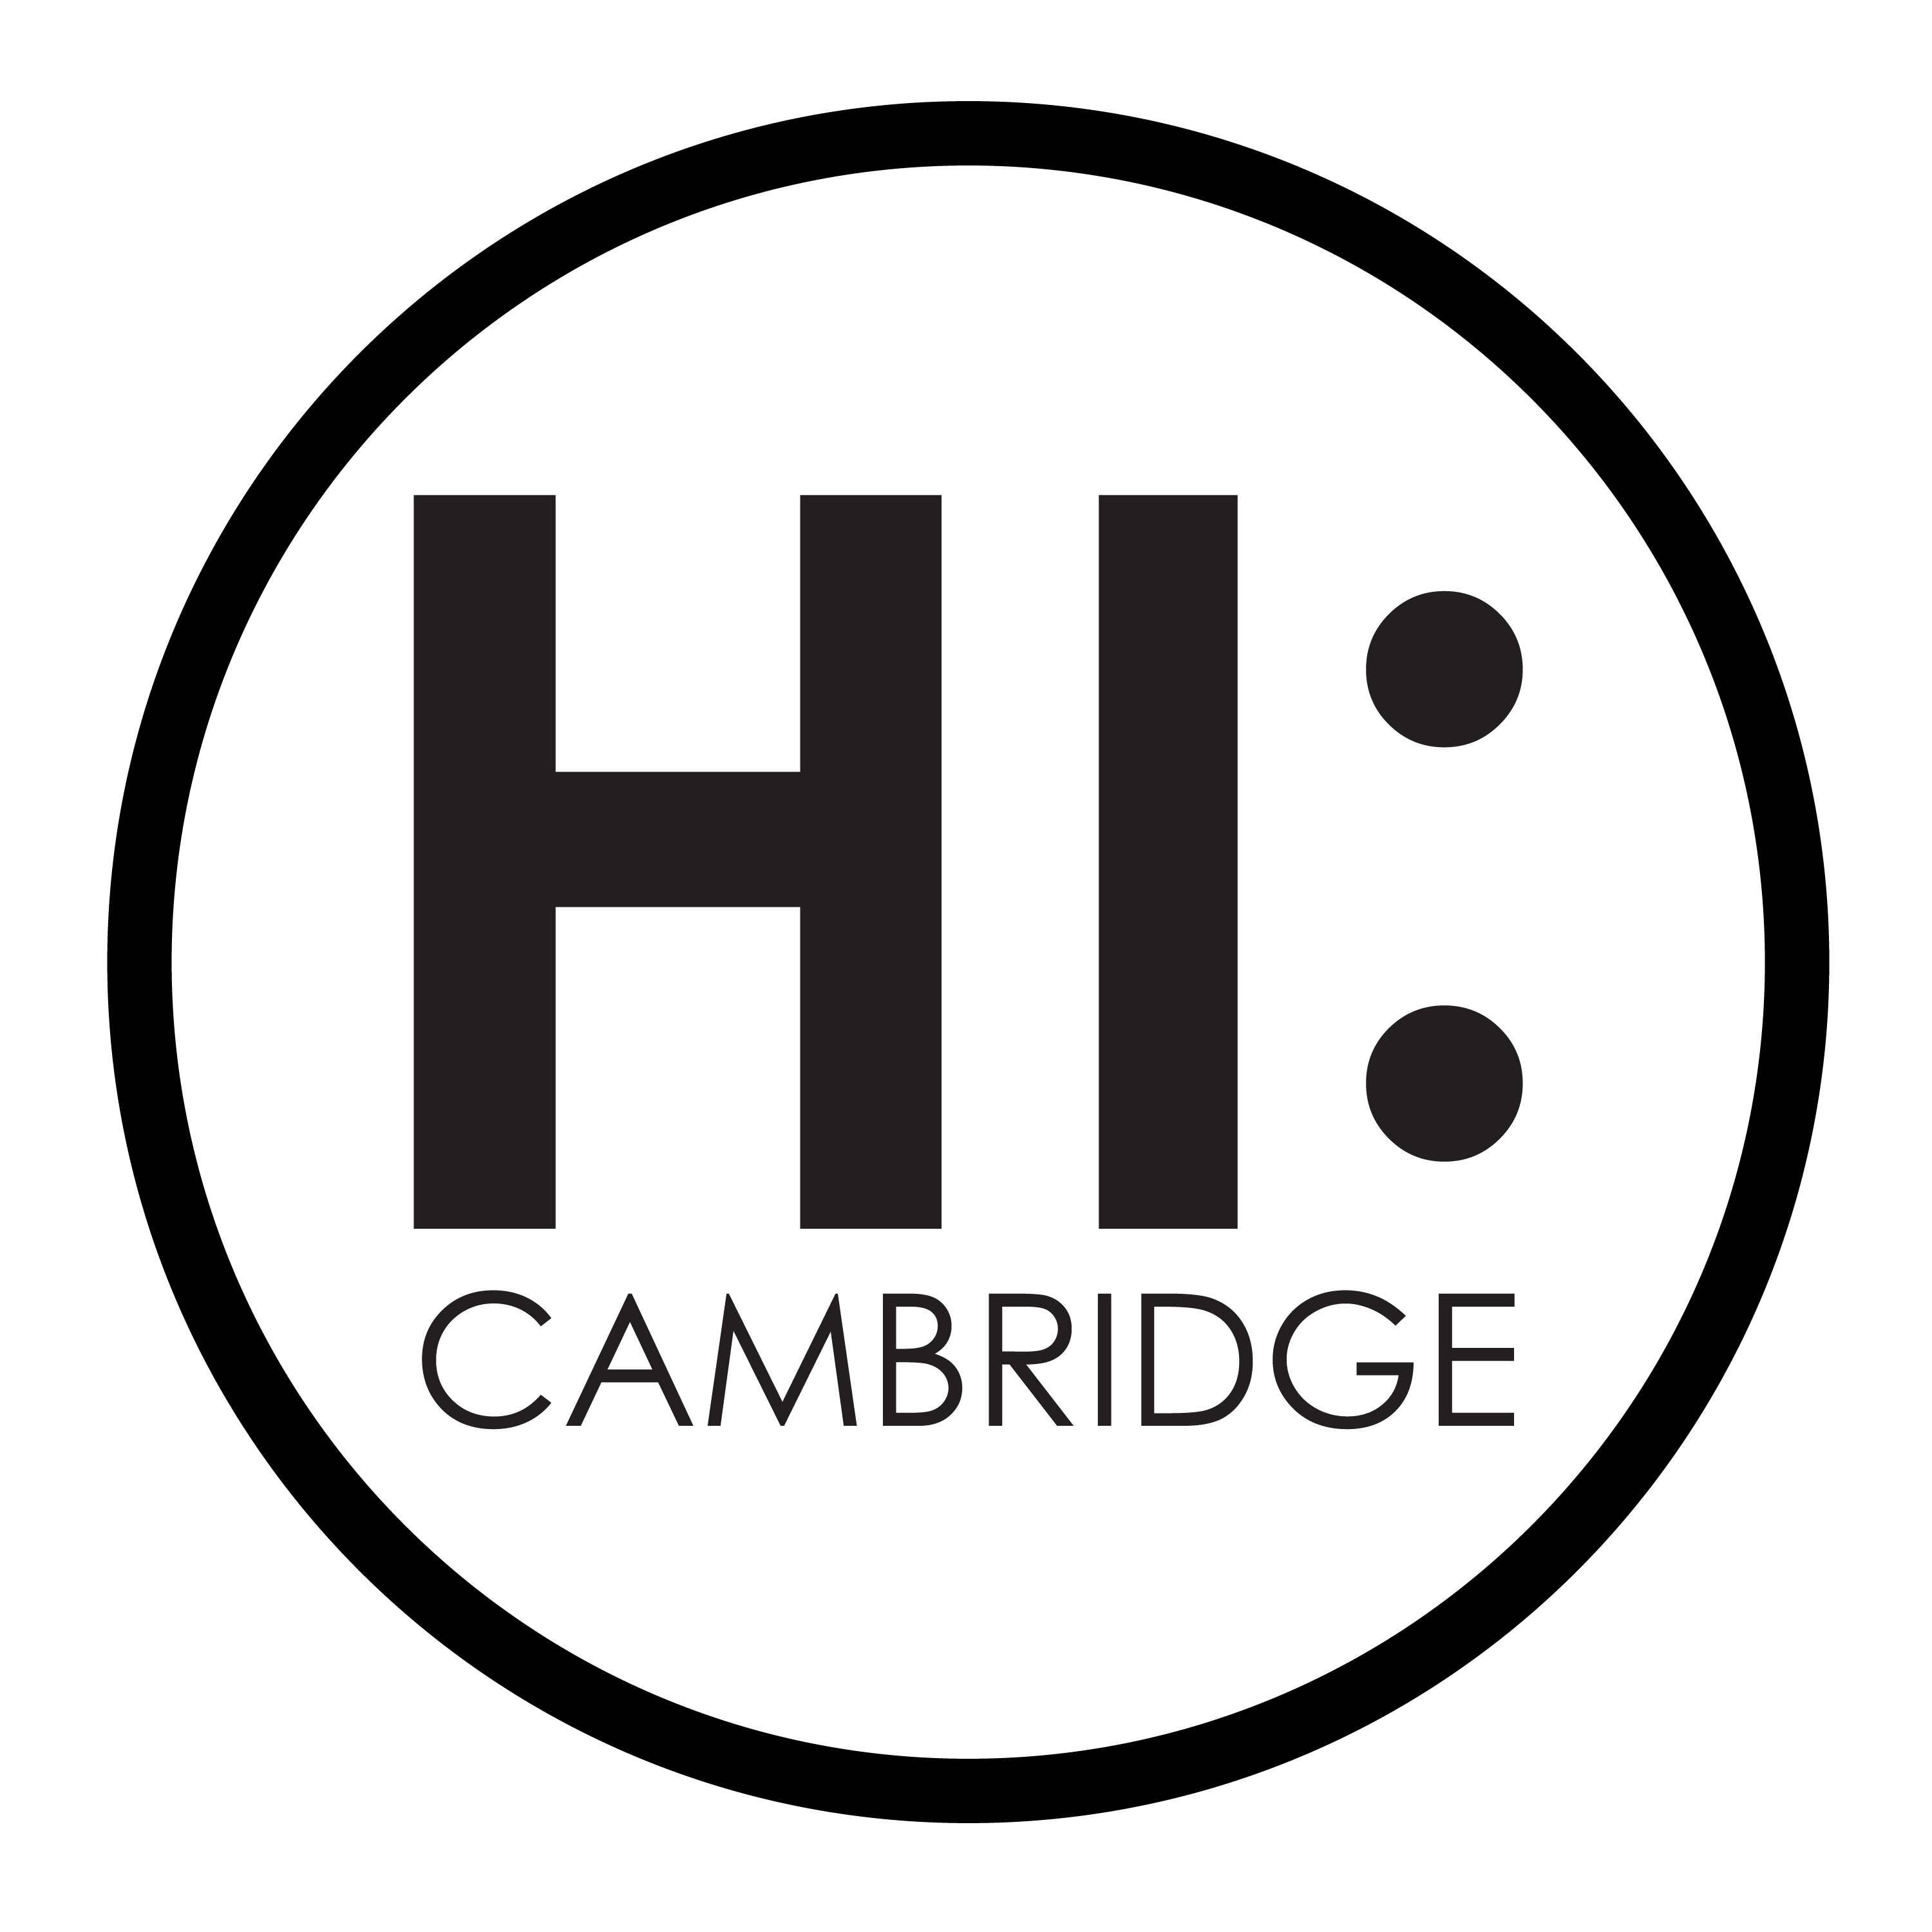 HI:CAMBRIDGE